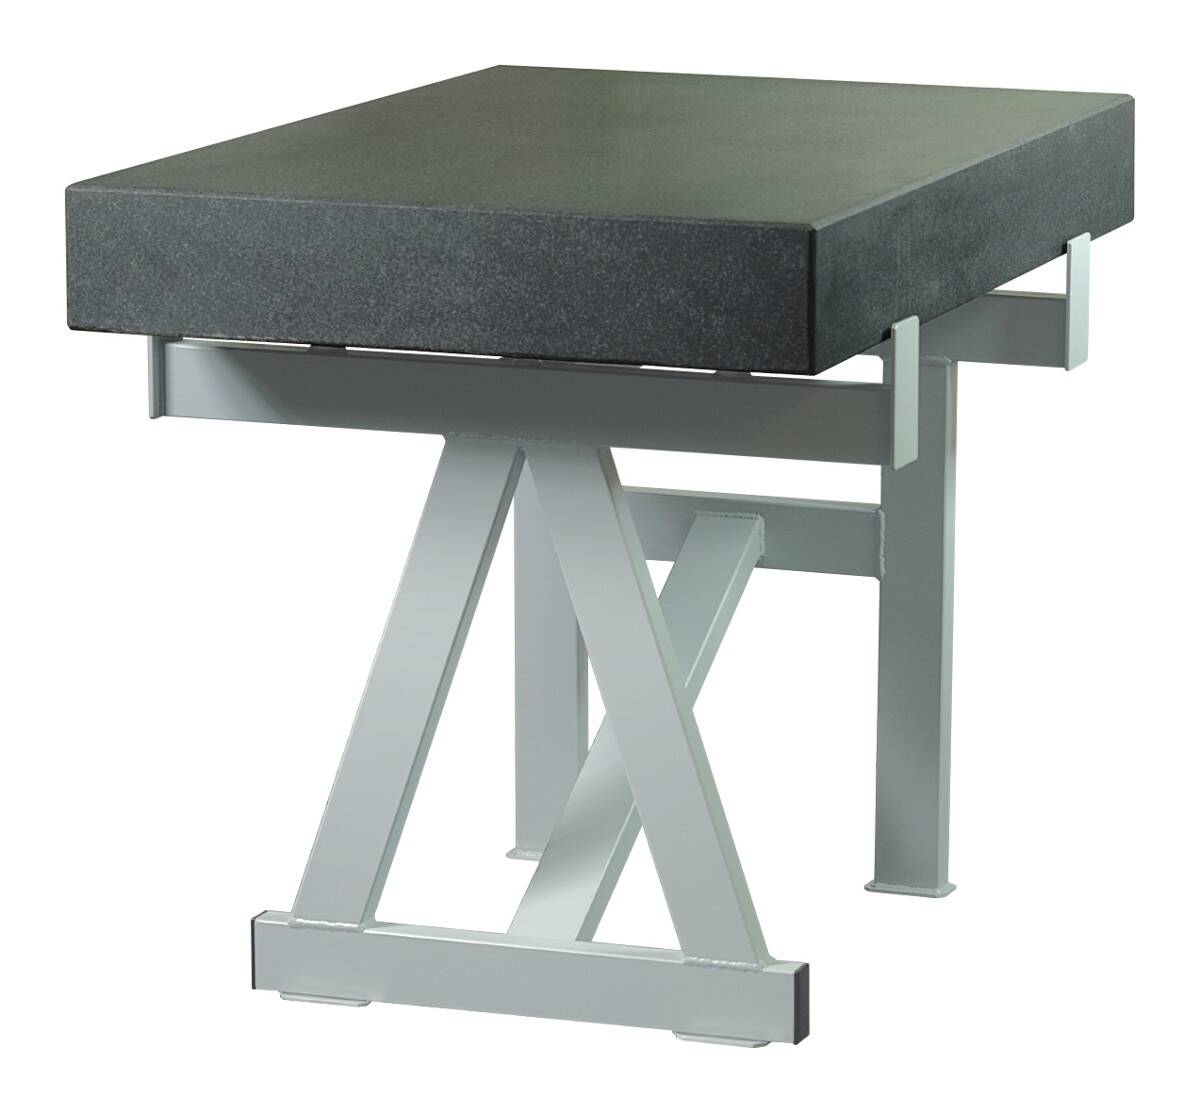 SCHUT stół do płyty pomiarowej żeliwnej 2000x1000mm 131.031